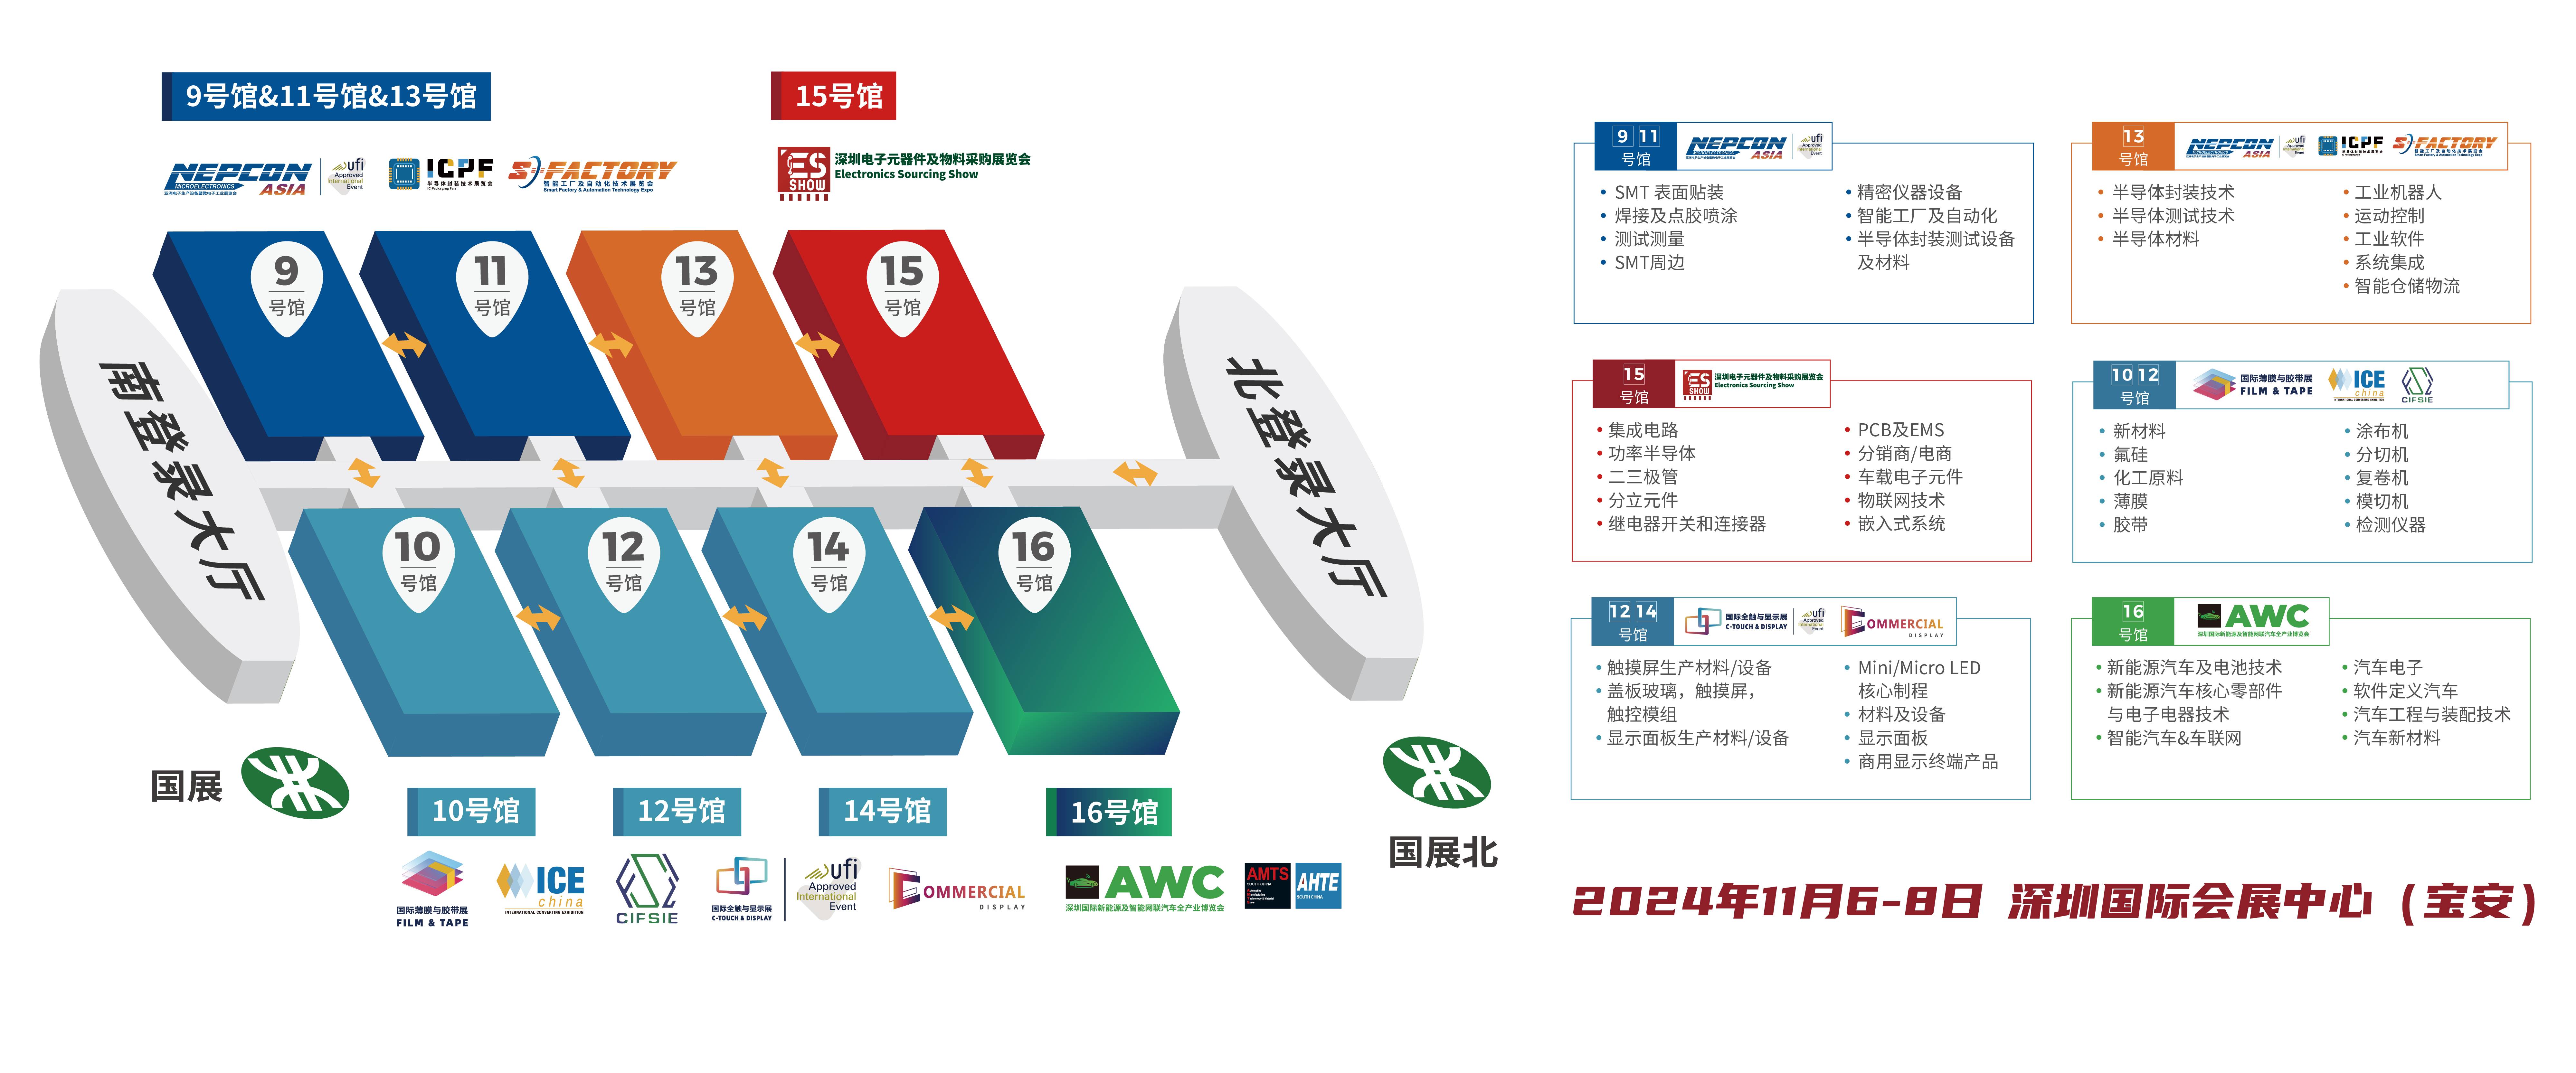 ESSHOW 深圳电子展 可穿戴 智能手表 华南电子展